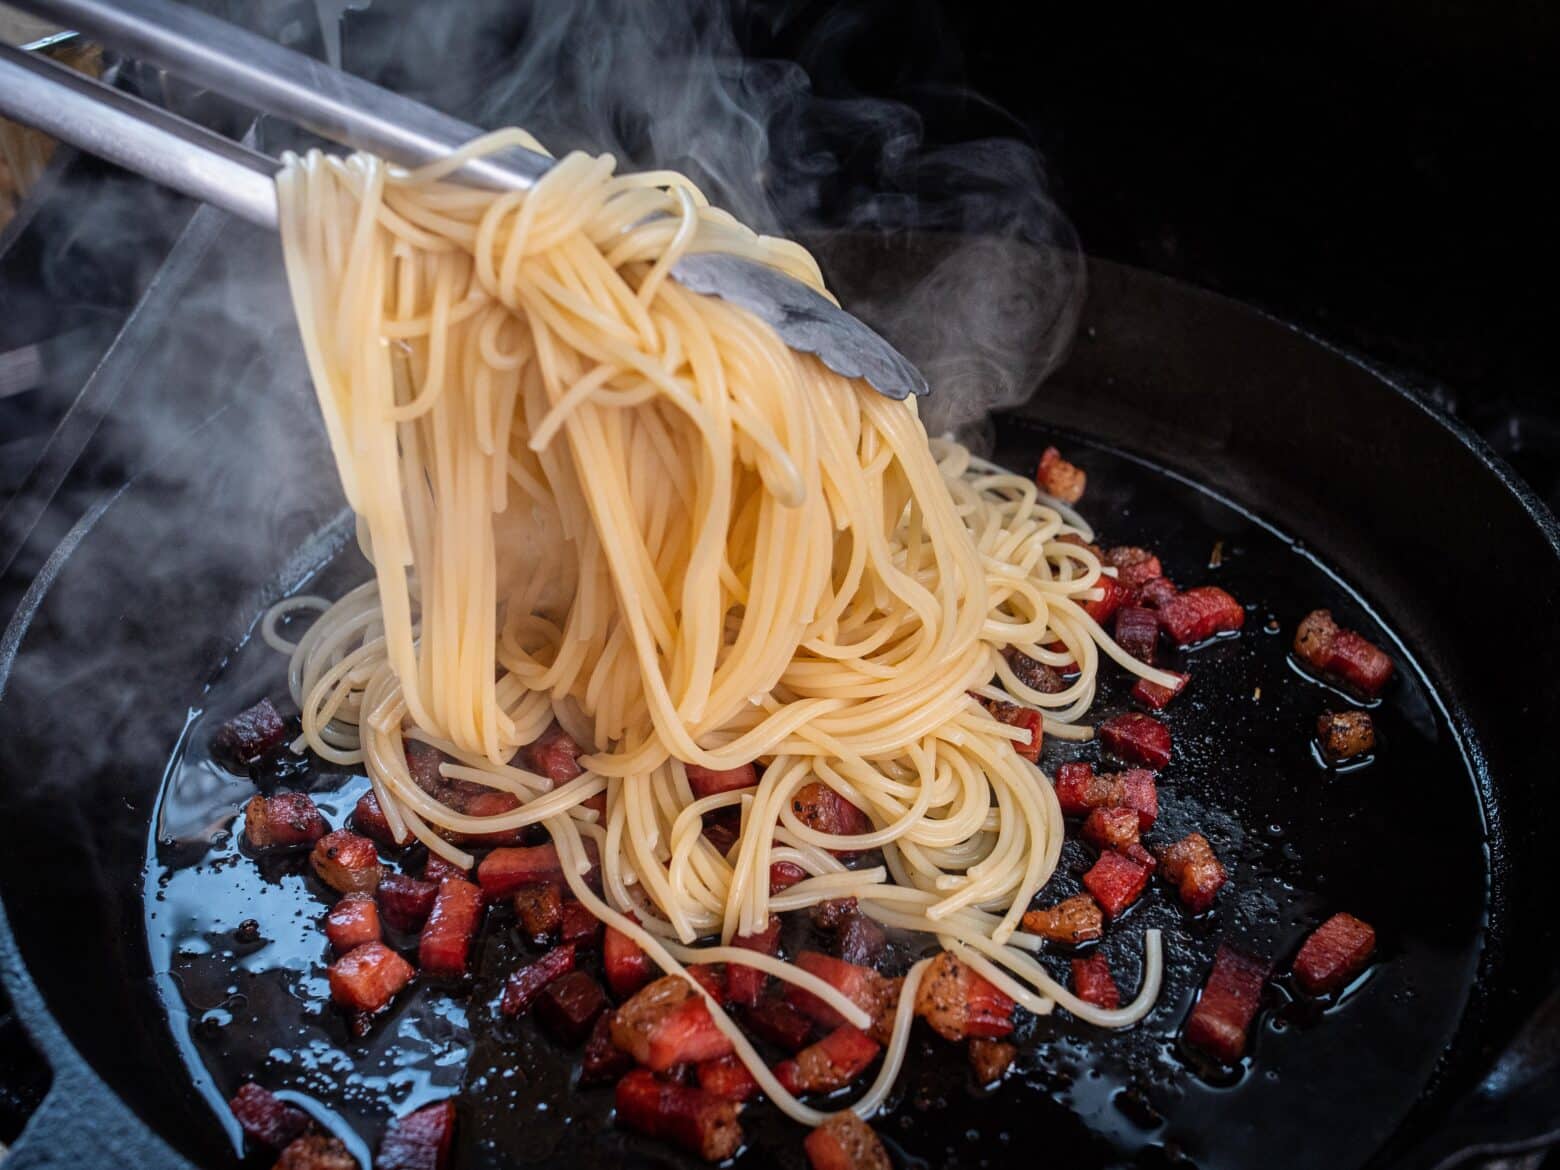 Spaghetti werden zu den Speckwürfeln gegeben